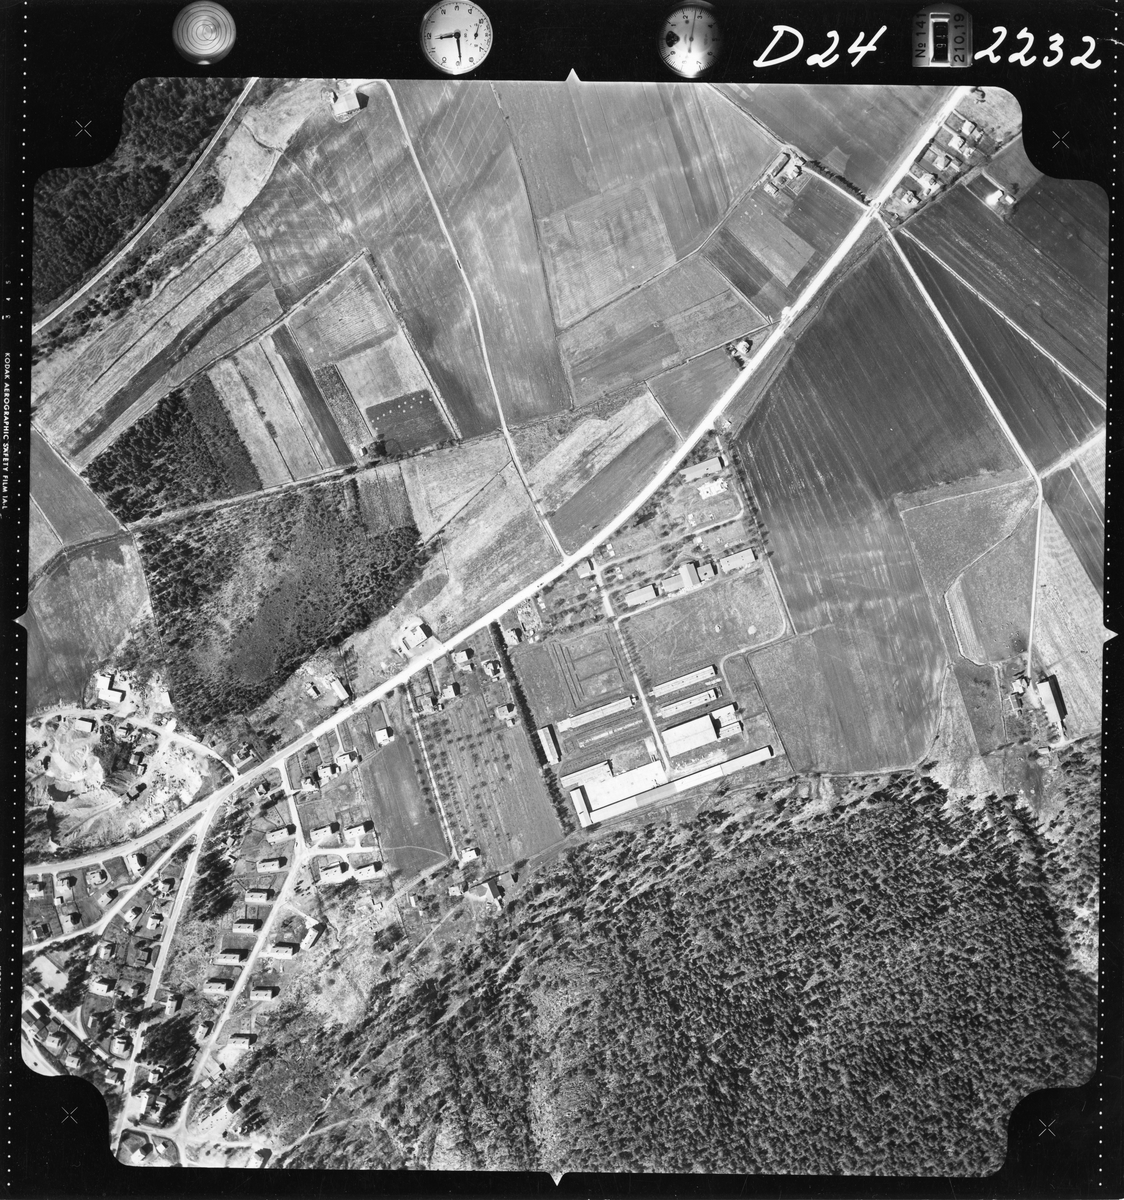 Flyfotoarkiv fra Fjellanger Widerøe AS, fra Porsgrunn Kommune, Vallermyrene leir. Fotografert 16/05-1962. Oppdrag nr 2232, D24